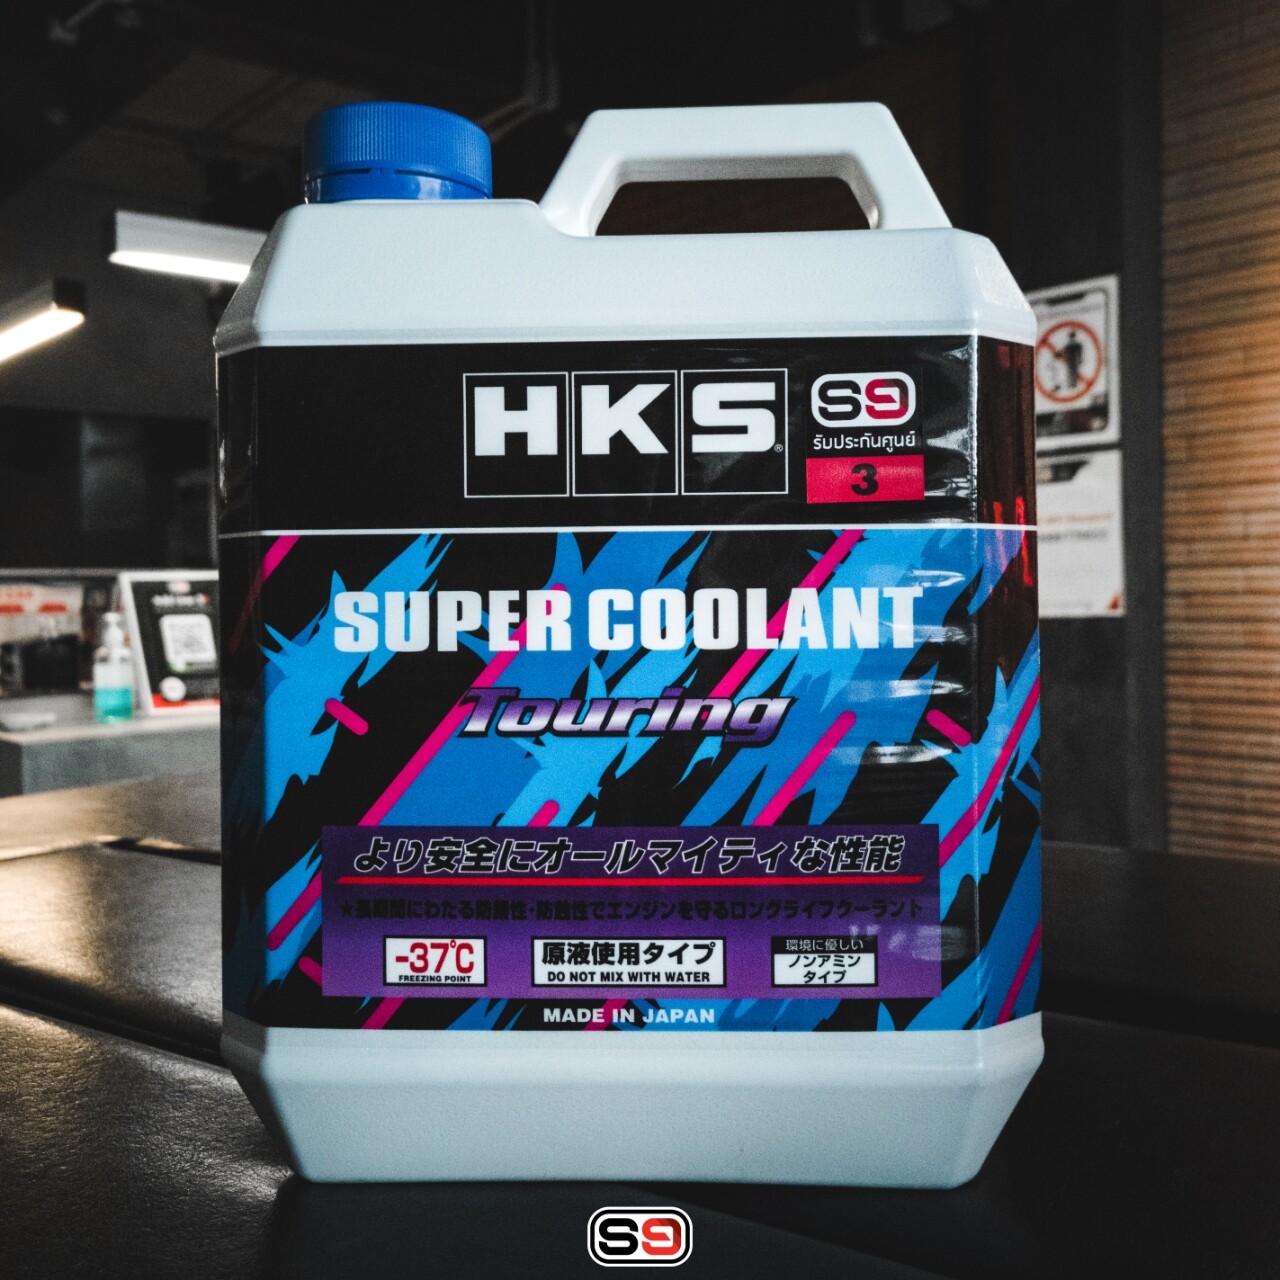 น้ำยาหม้อน้ำ HKS Super Coolant (Touring) ขนาด 4ลิตร ไม่ต้องผสมน้ำ!!